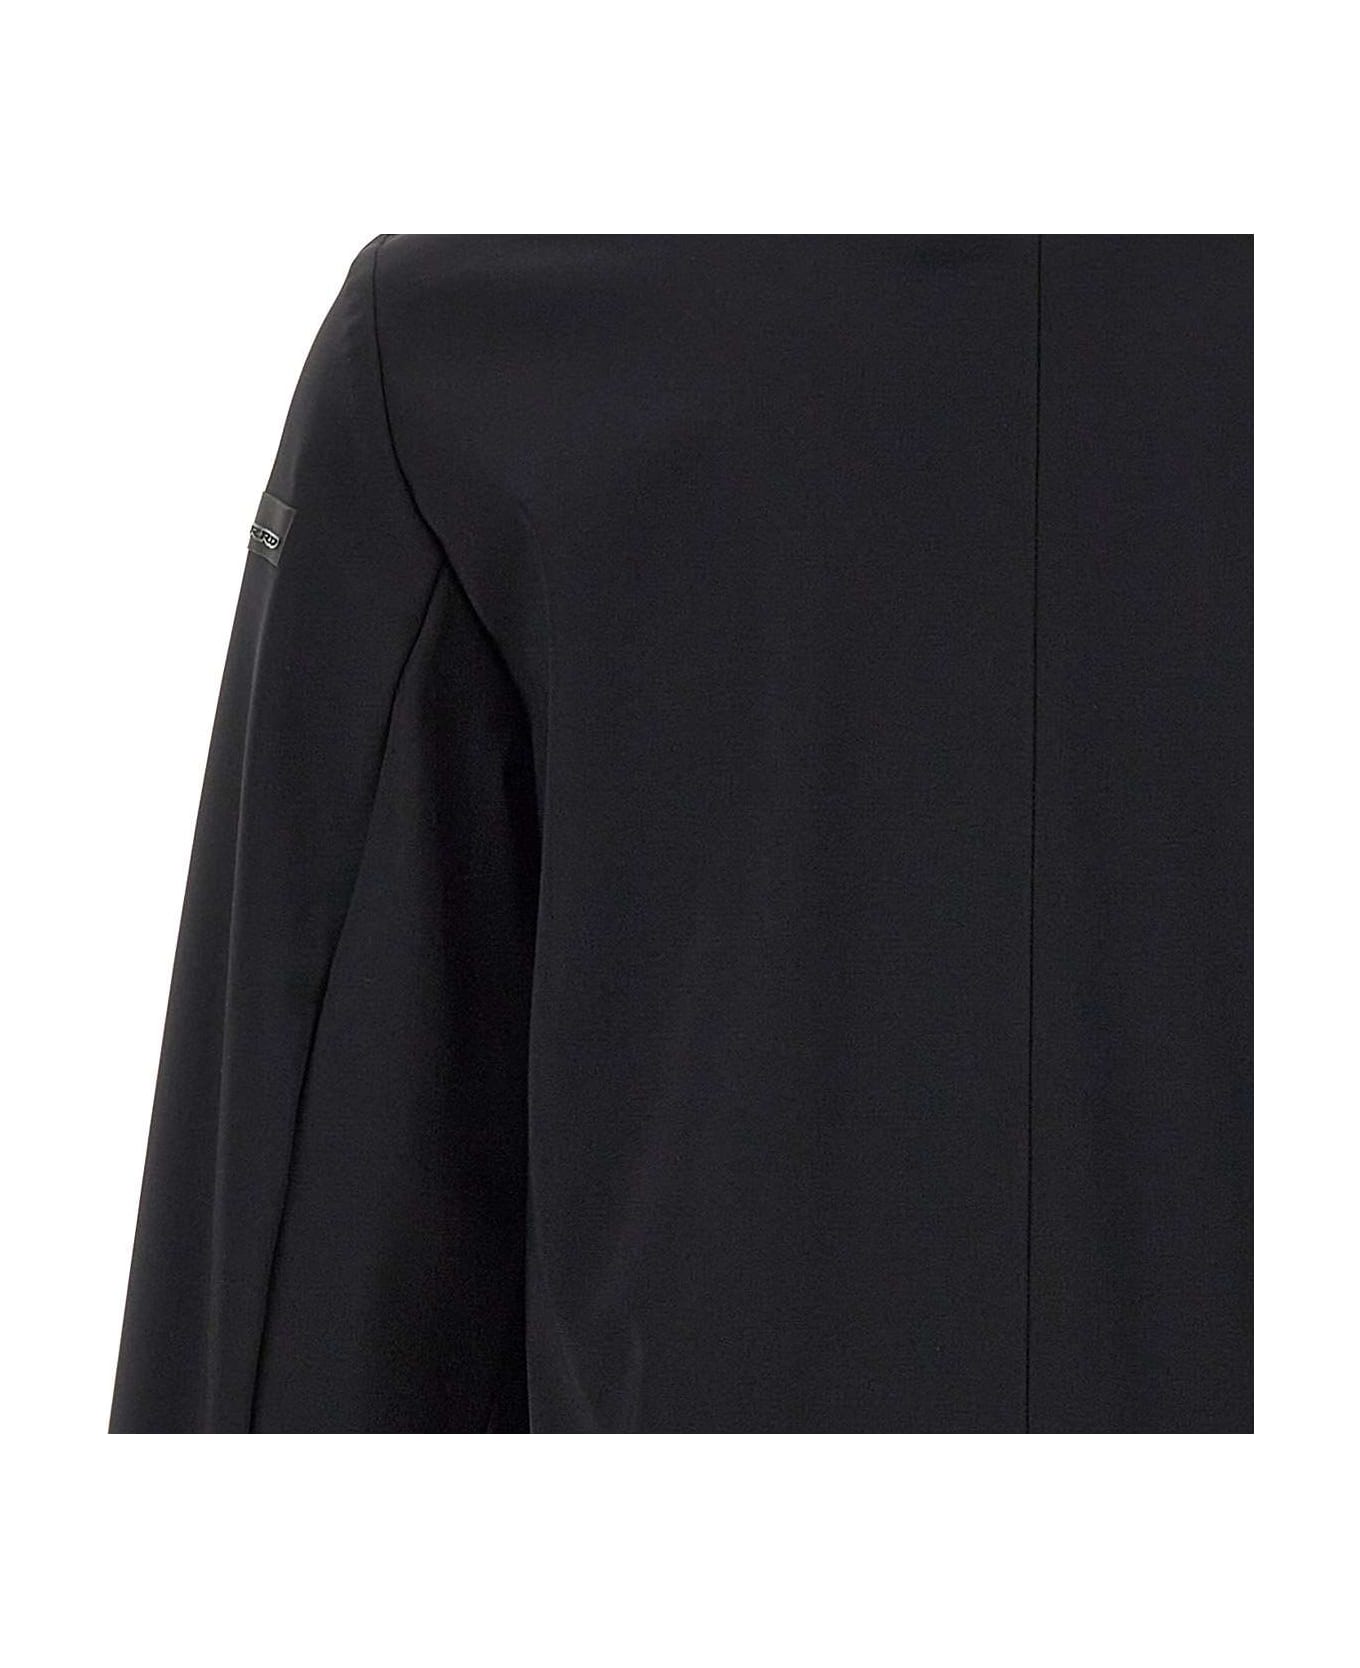 RRD - Roberto Ricci Design 'winter Thermo Coat' Coat RRD - Roberto Ricci Design - BLACK ブレザー